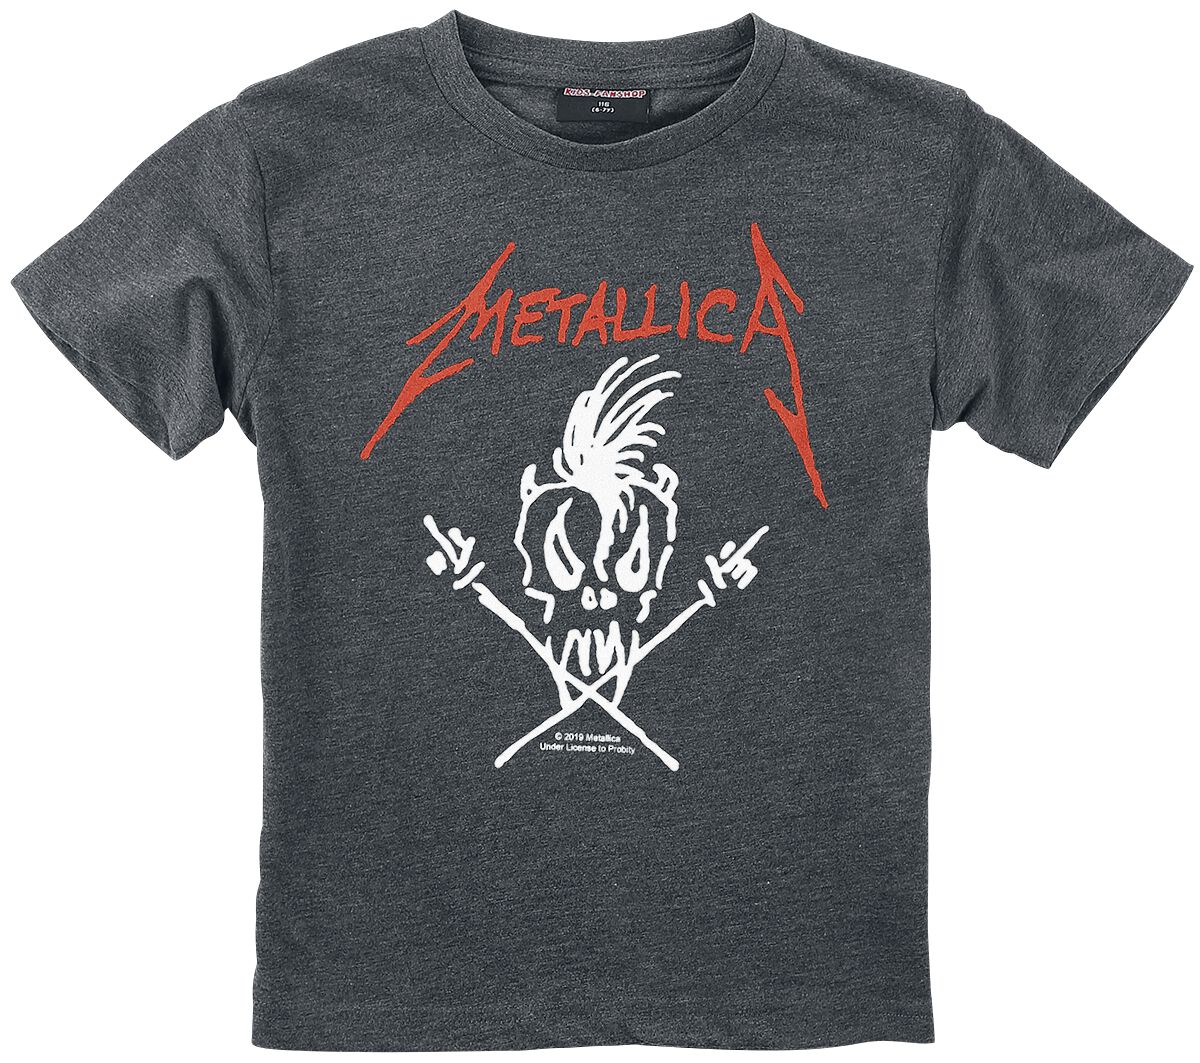 Metallica T-Shirt für Kinder - Metal-Kids - Scary Guy - für Mädchen & Jungen - anthrazit meliert  - Lizenziertes Merchandise!